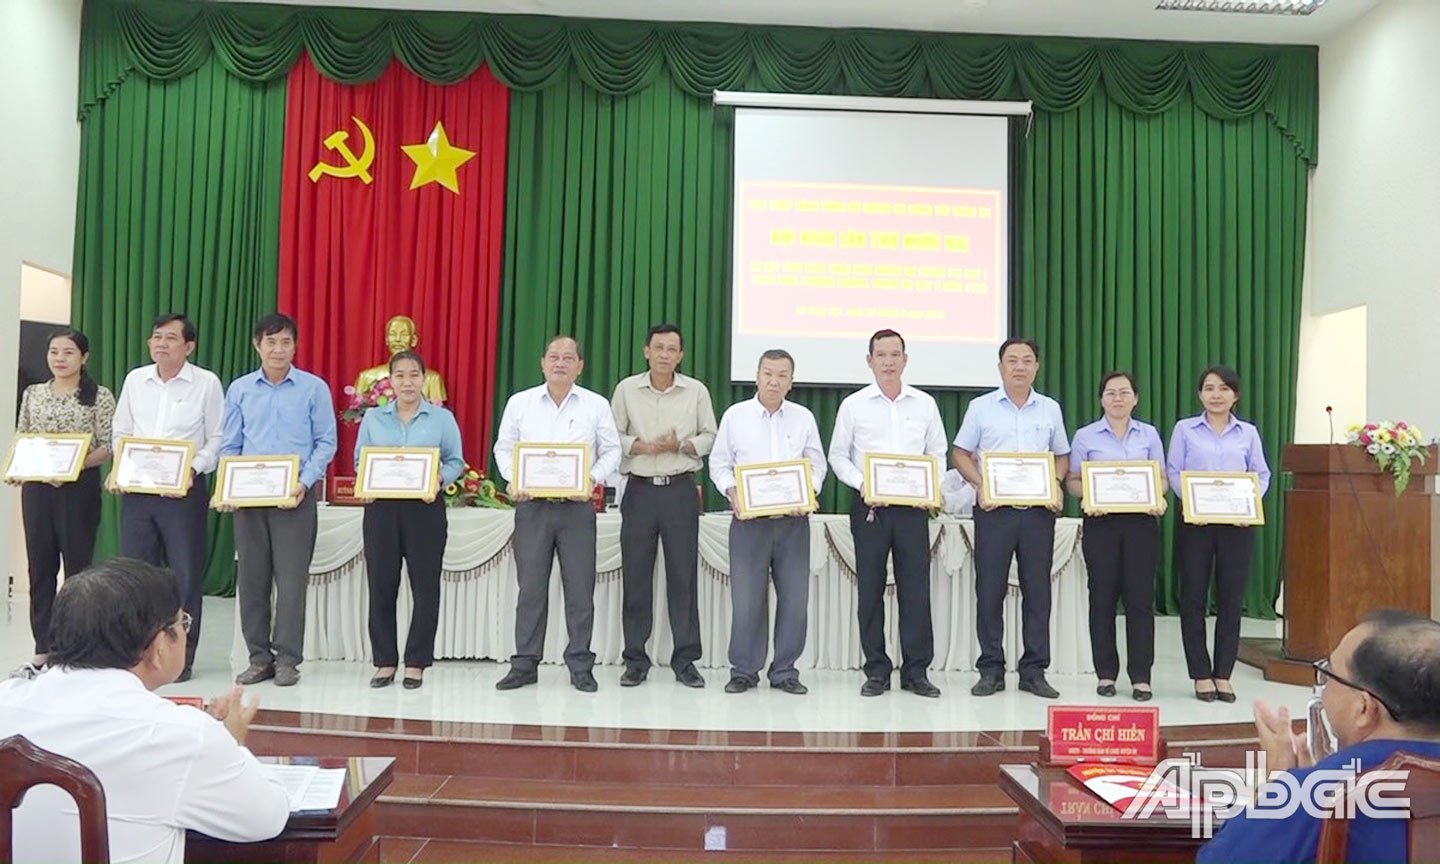 Đại diện lãnh đạo Đảng bộ xã Đồng Thạnh (thứ 3 từ trái sang) nhận Giấy khen của Ban Thường vụ Huyện ủy Gò Công Tây khen thưởng các tổ chức cơ sở Đảng tiêu biểu năm 2022.